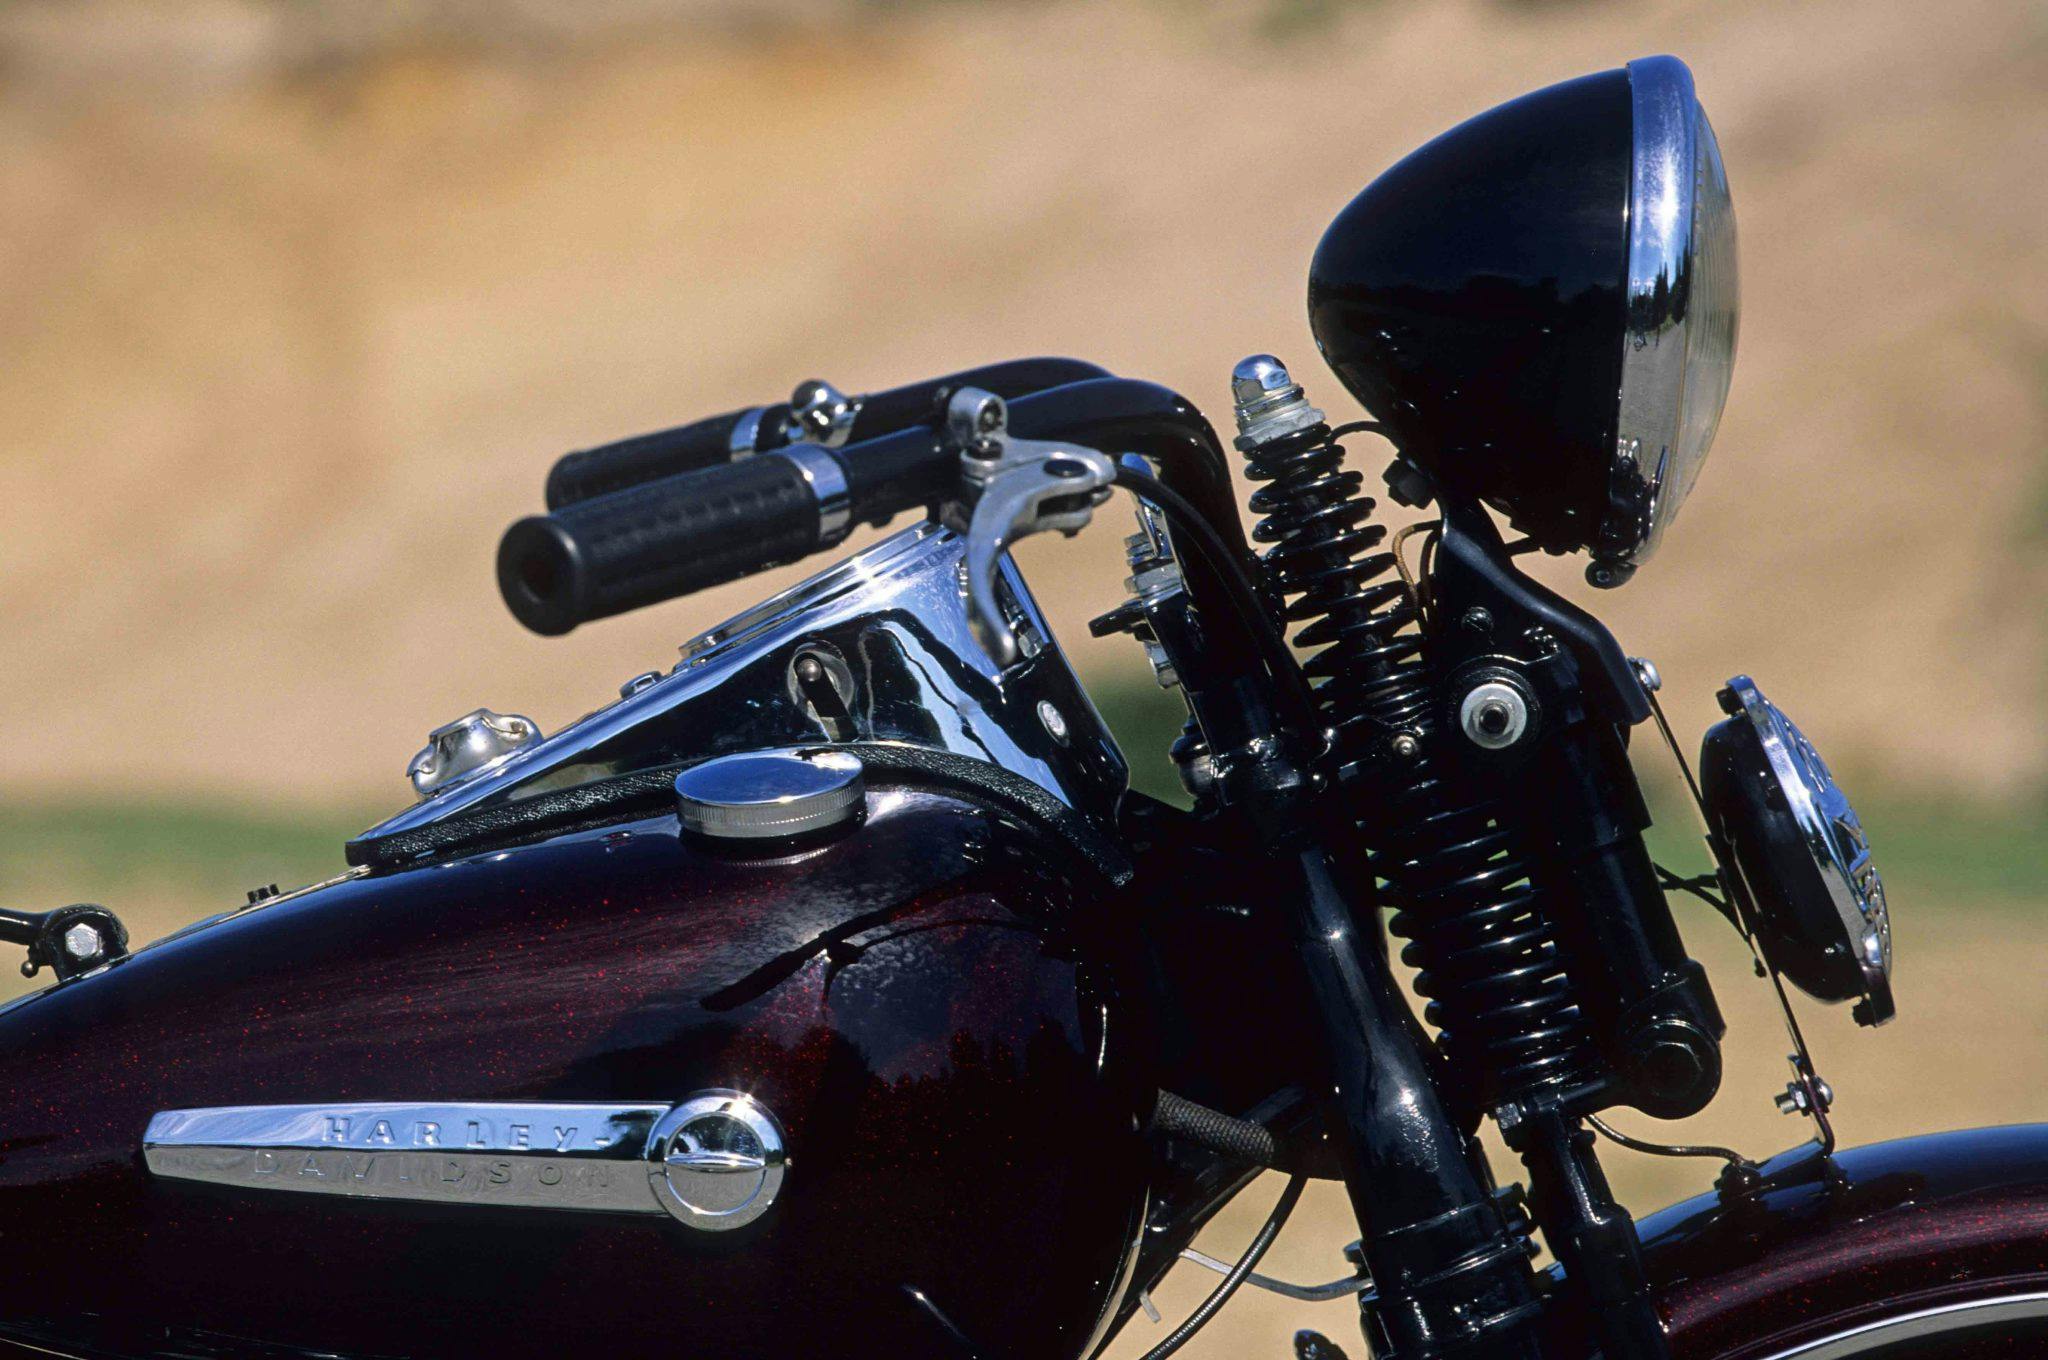 Harley-Davidson WL45 motorcycle bars